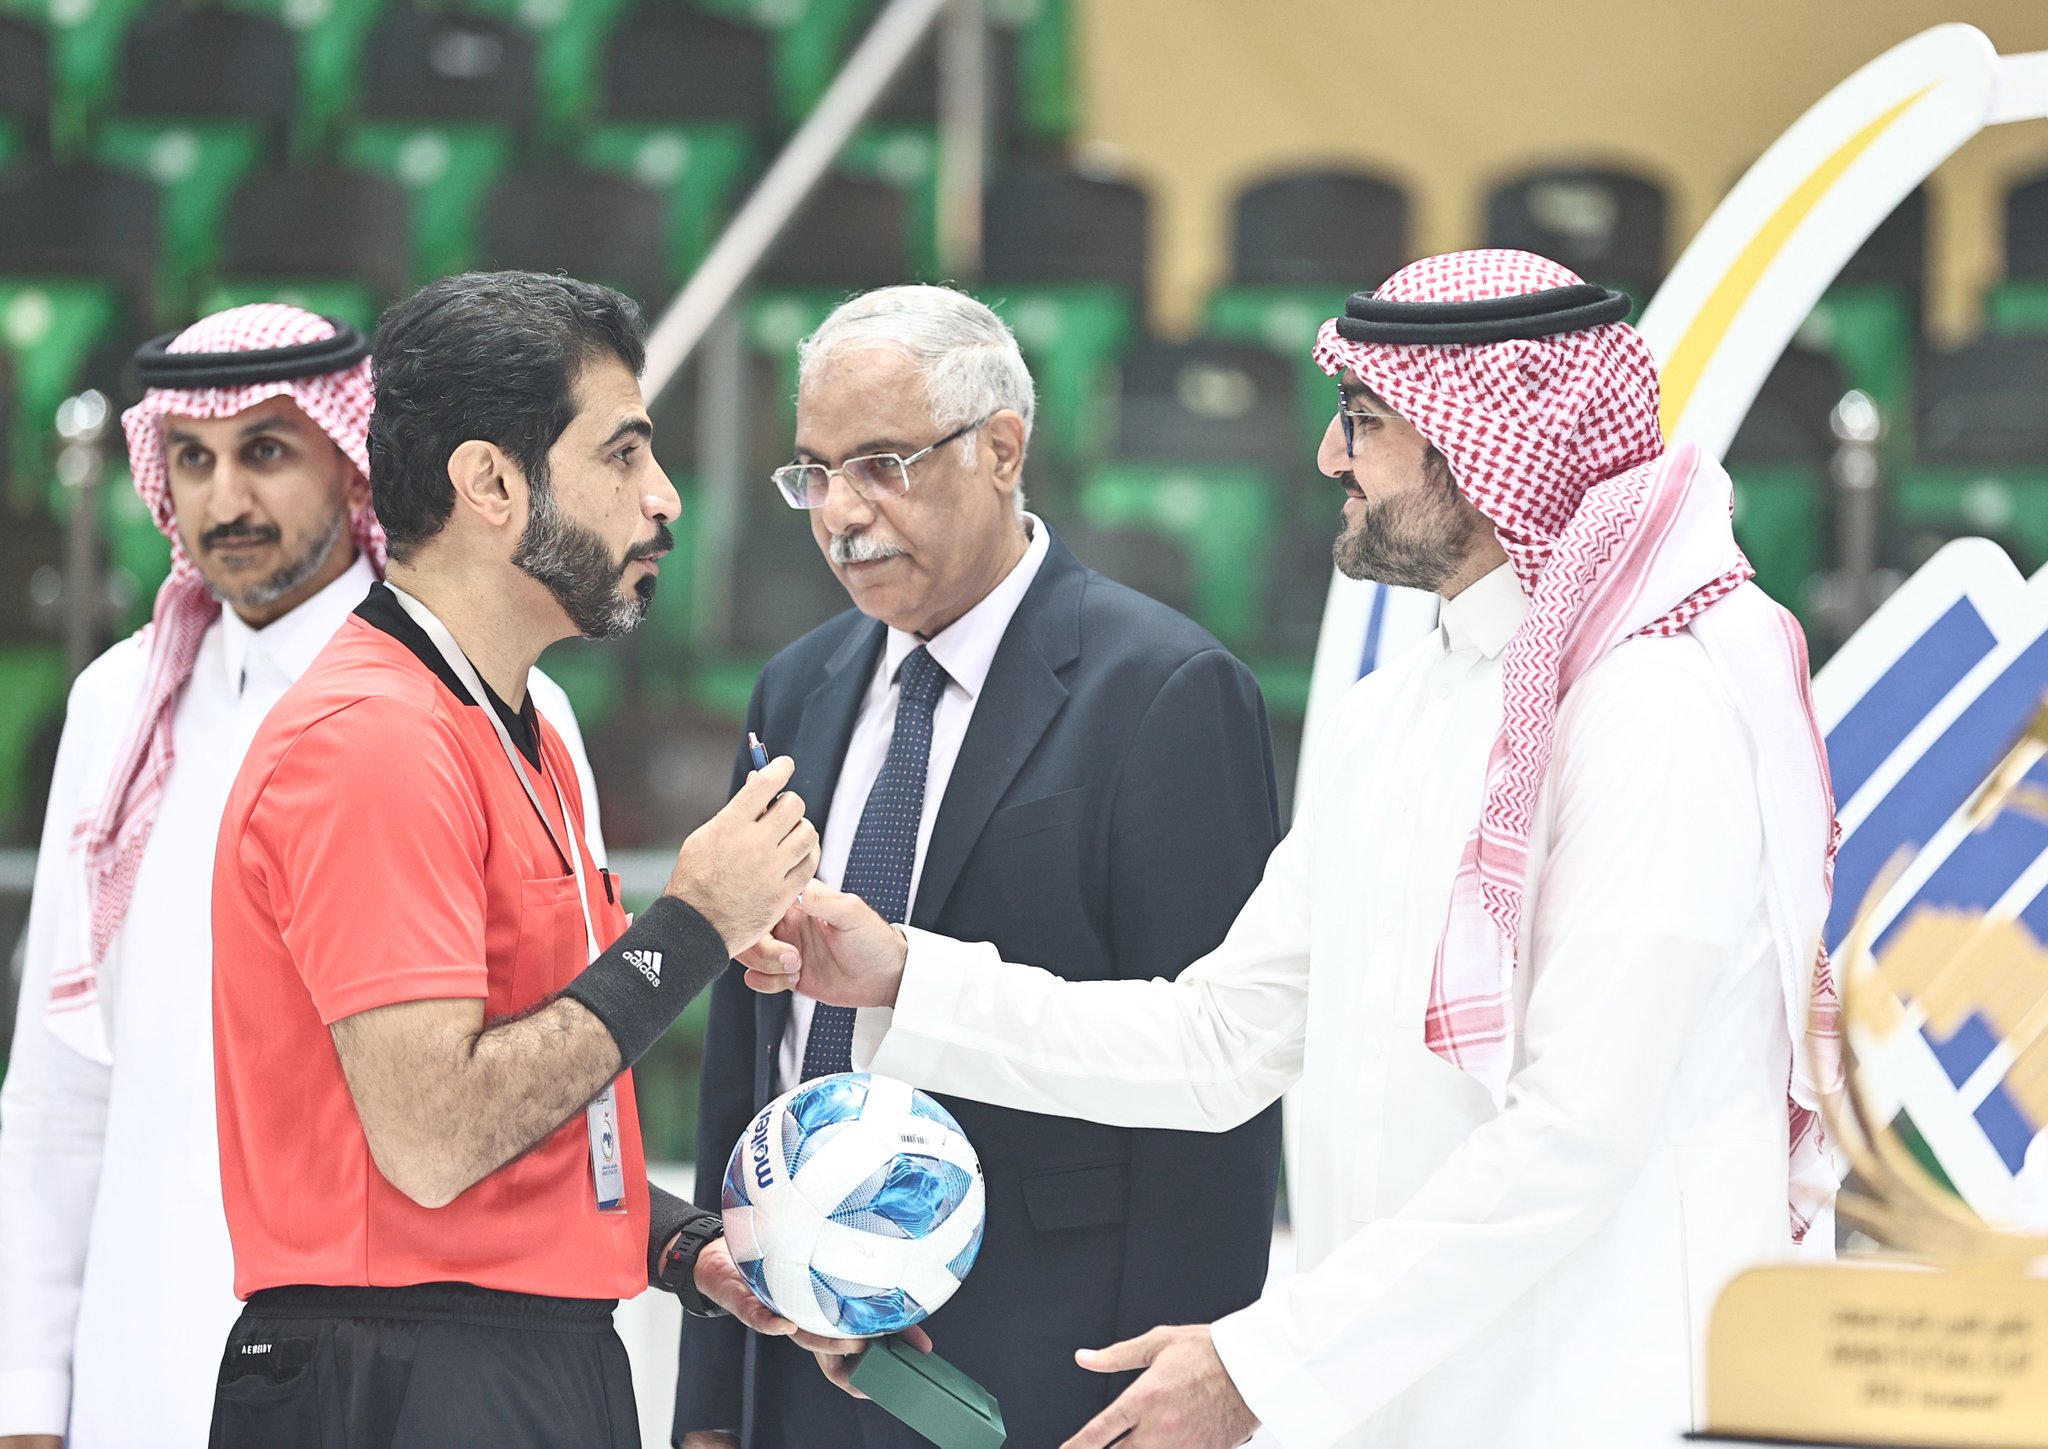 اتحاد الكرة يُشيد بالحكم فهد الحوسني لإدارته المتميزة لنهائي بطولة العرب لكرة الصالات